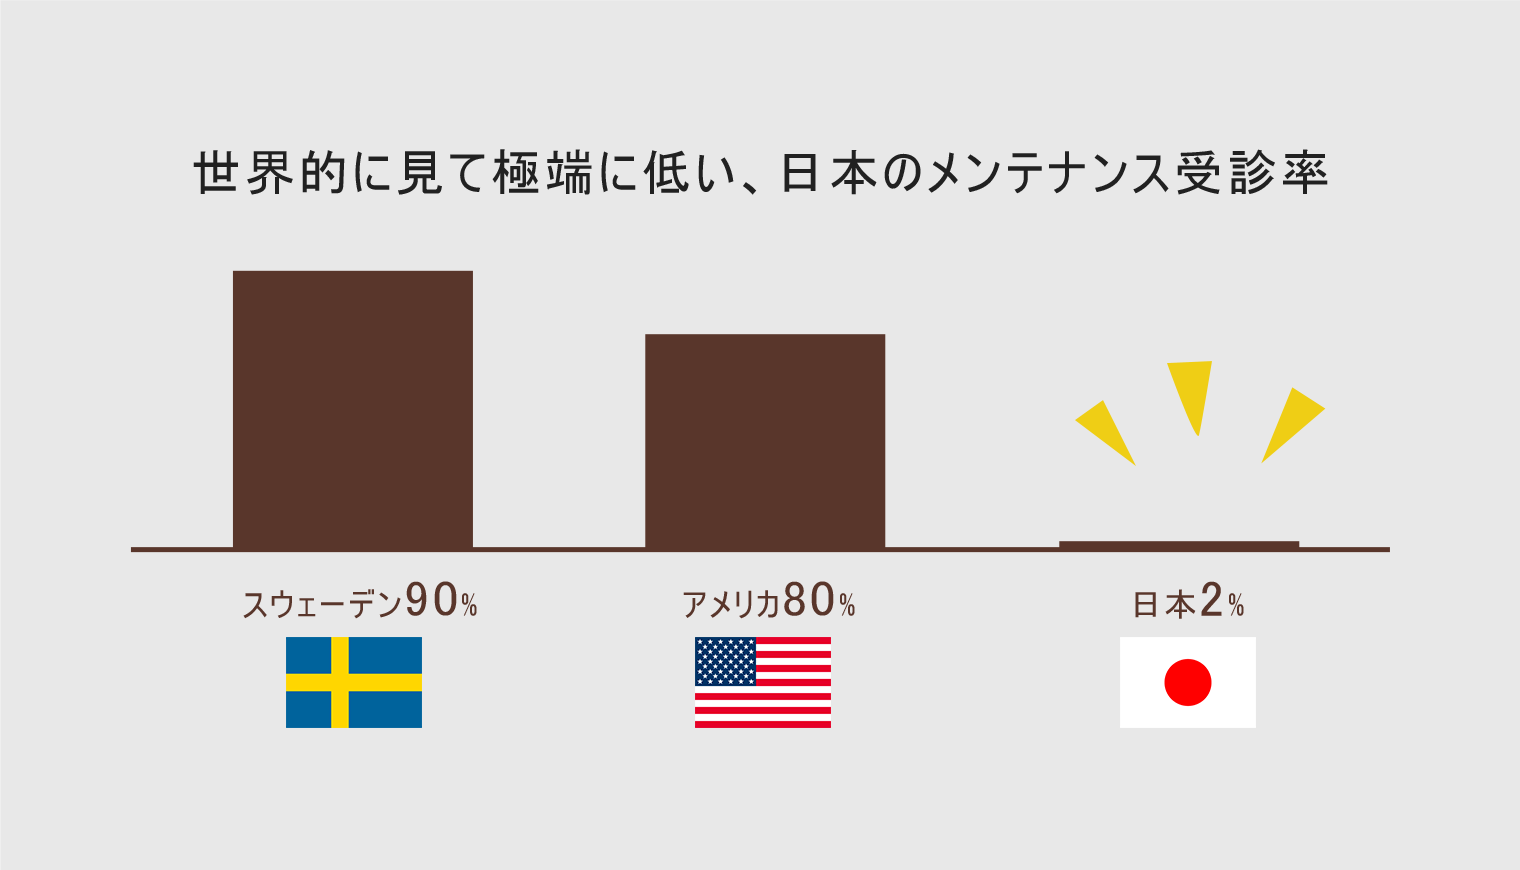 世界的に見て極端に低い、日本のメンテナンス受診率